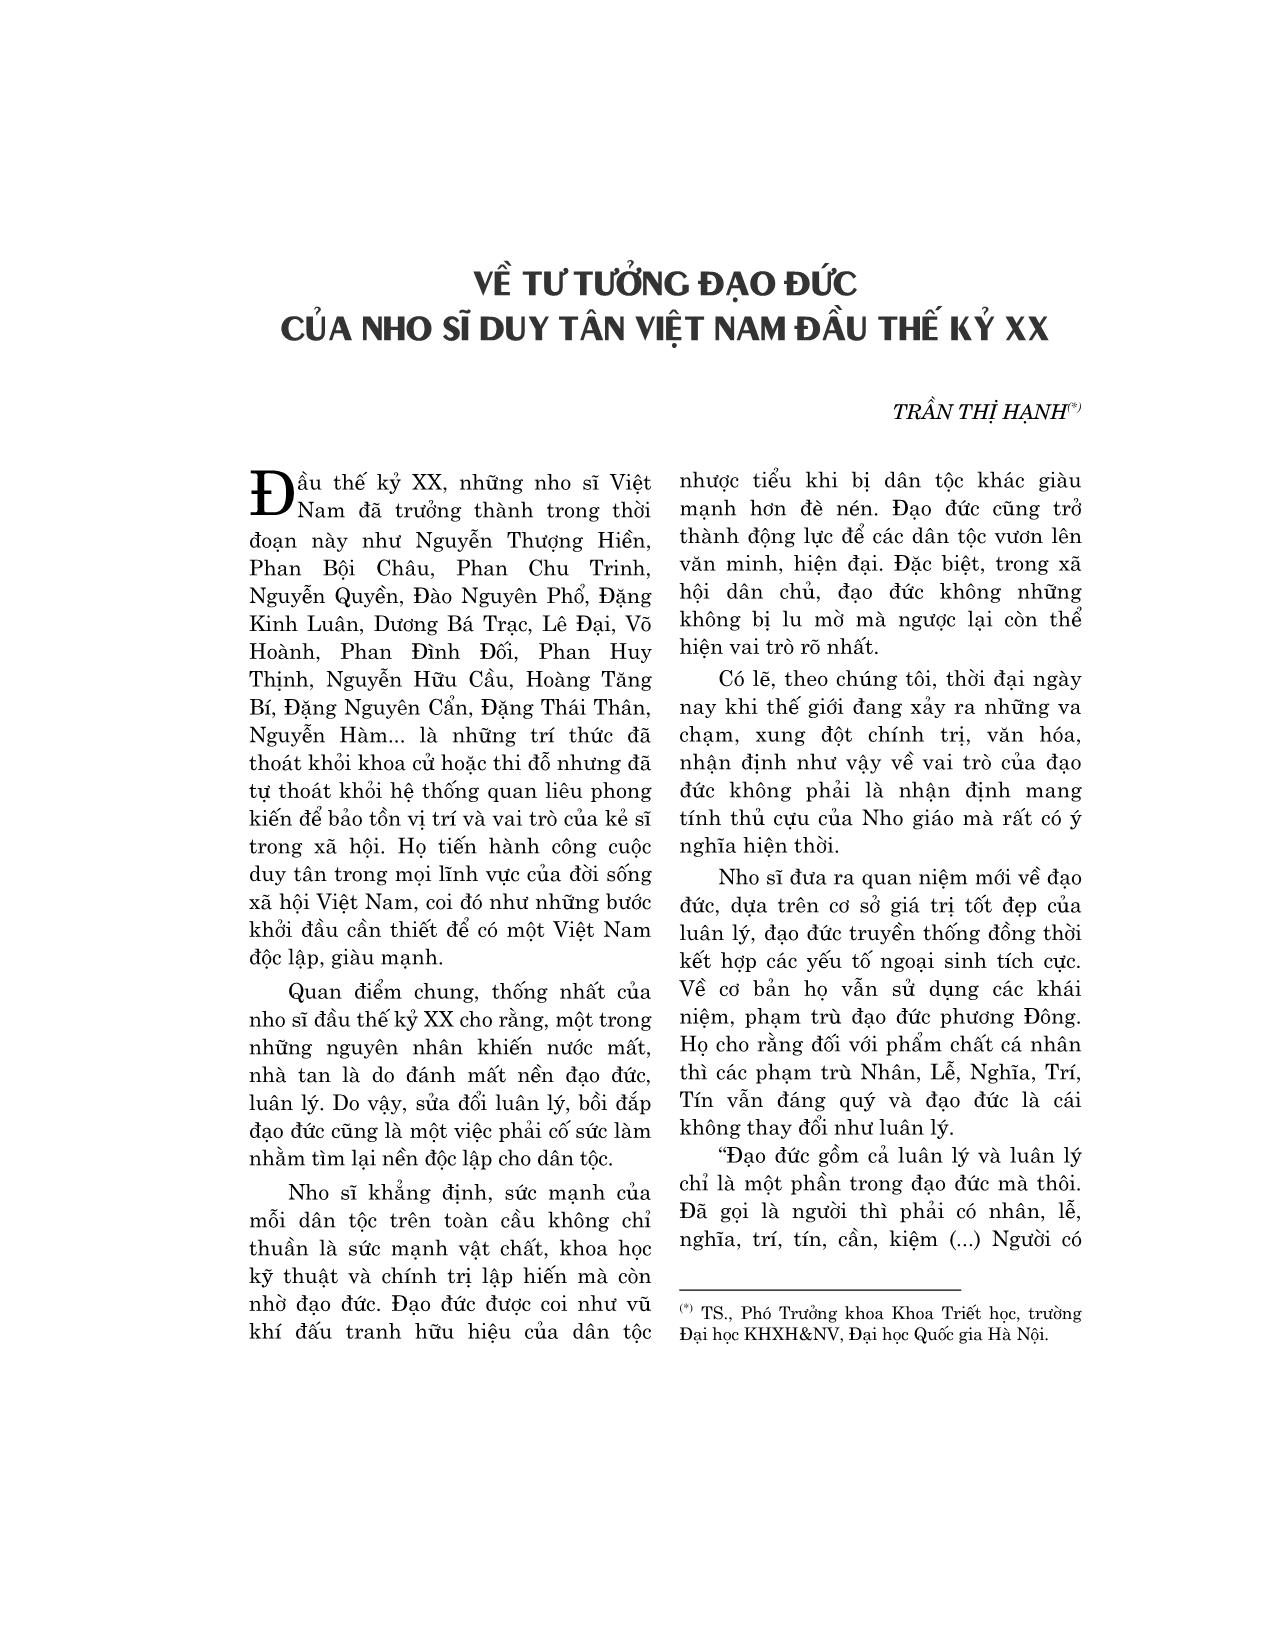 Về tư tưởng đạo đức của Nho sĩ Duy Tân Việt Nam đầu thế kỷ XX trang 1